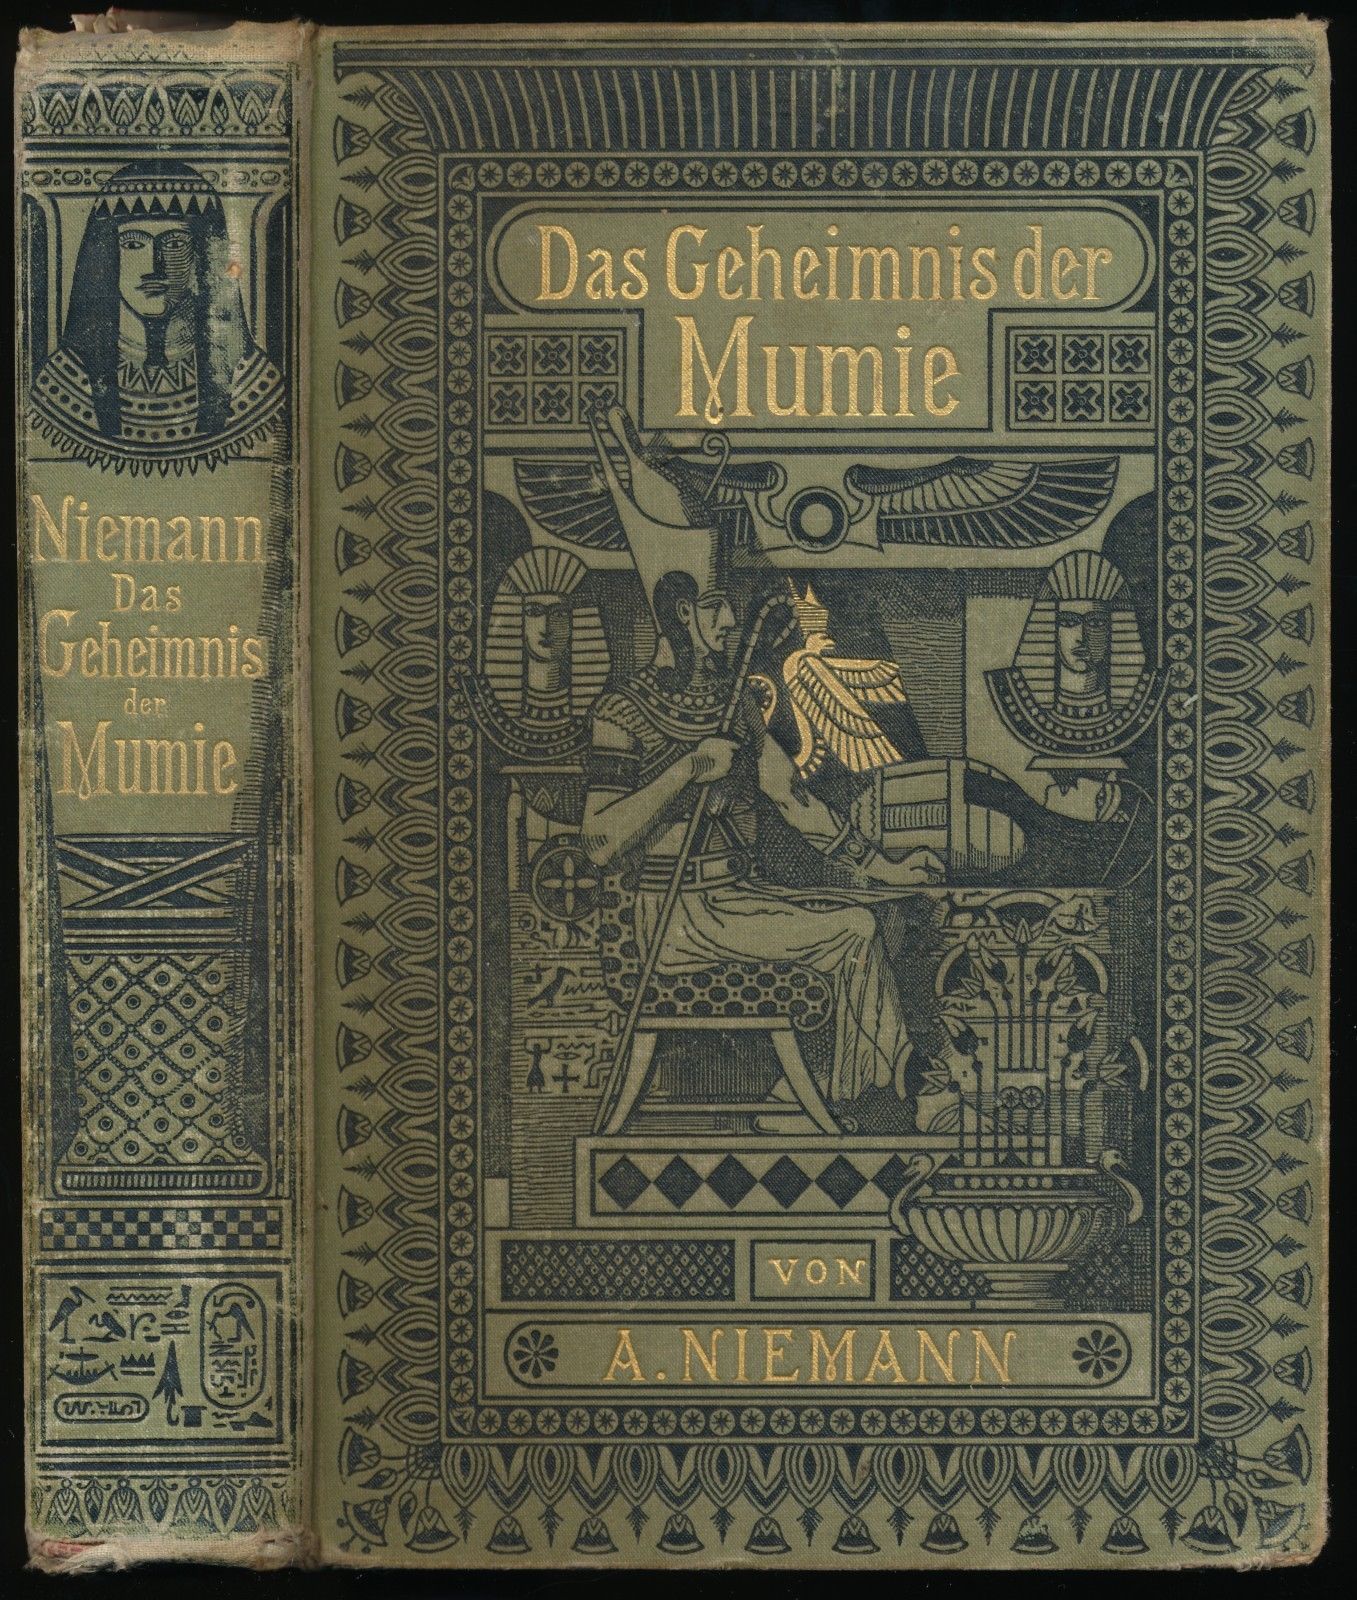 Niemann Das Geheimnis der Mumie.jpg